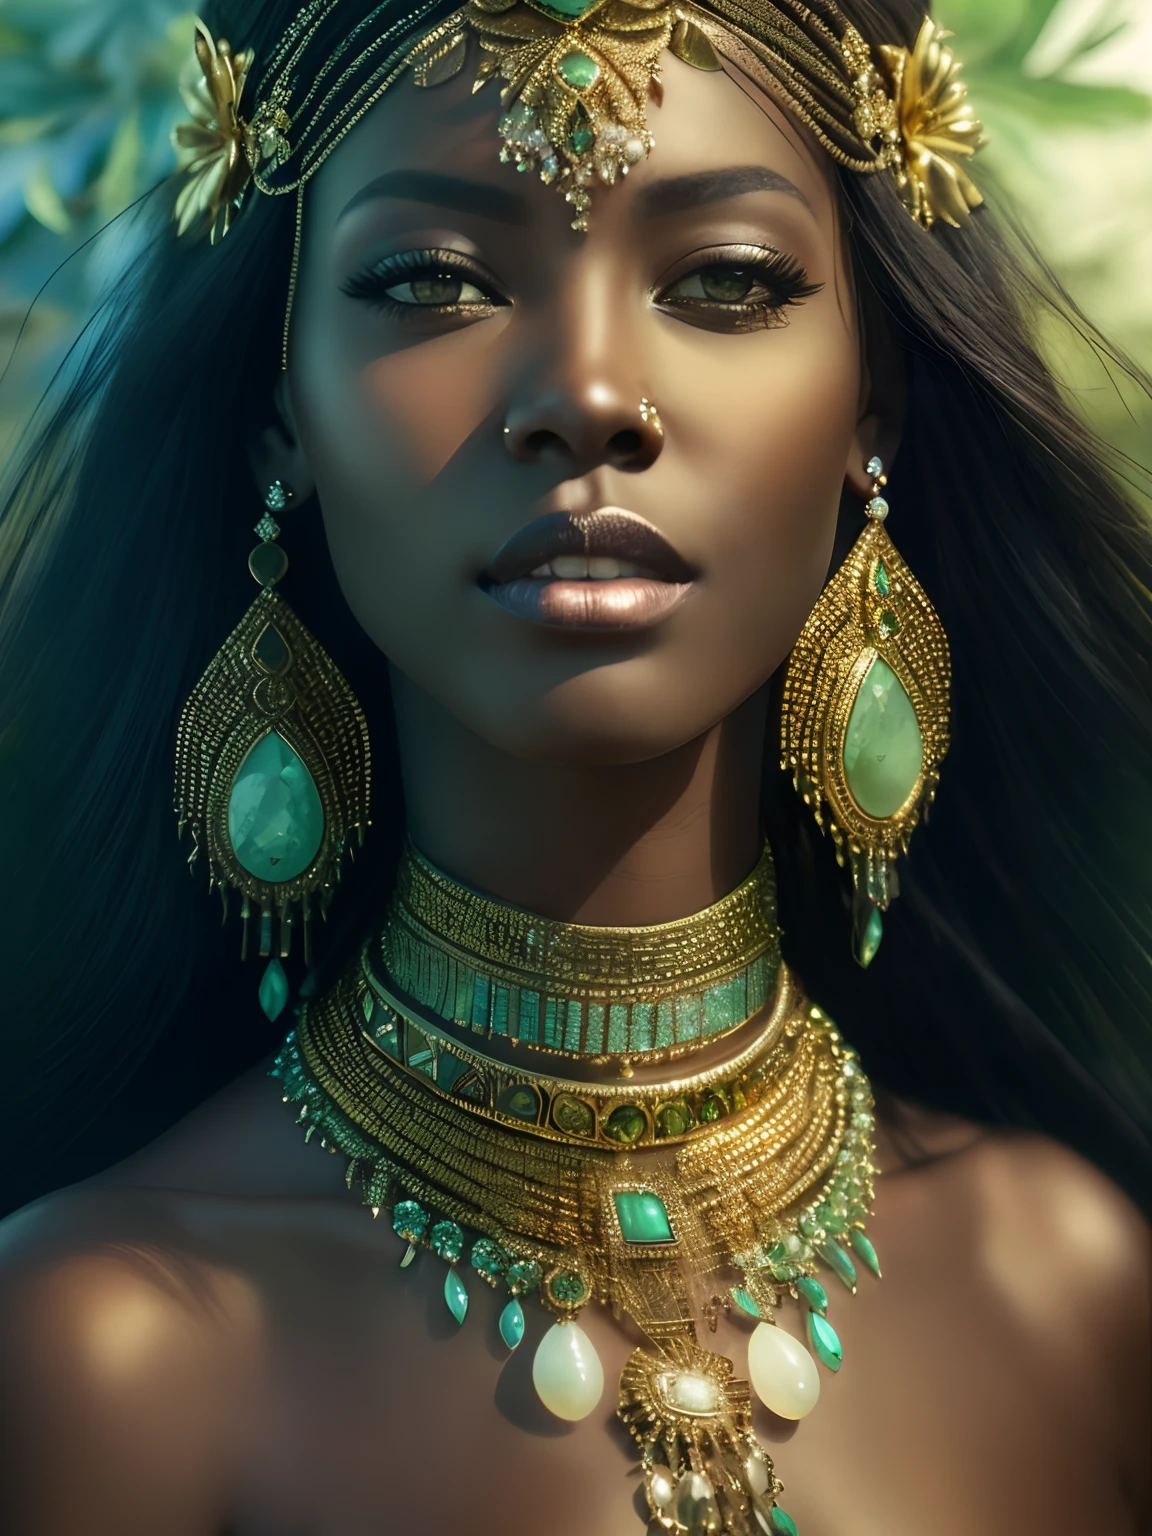 ภาพระยะใกล้ของผู้หญิงสวมสร้อยคอและต่างหูสีทองและสีเขียว, stunning เจ้าหญิงแอฟริกัน, dark skin female เจ้าแม่ of love, a stunning portrait of a เจ้าแม่, black เจ้าหญิงแอฟริกัน, ผู้หญิงที่งดงาม, เจ้าแม่. รายละเอียดที่สูงมาก, portrait of a beautiful เจ้าแม่, เจ้าแม่ close-up portrait, จักรพรรดินีแฟนตาซีที่สวยงาม, เจ้าหญิงแอฟริกัน, มหากาพย์ 3 มิติ โอชุน